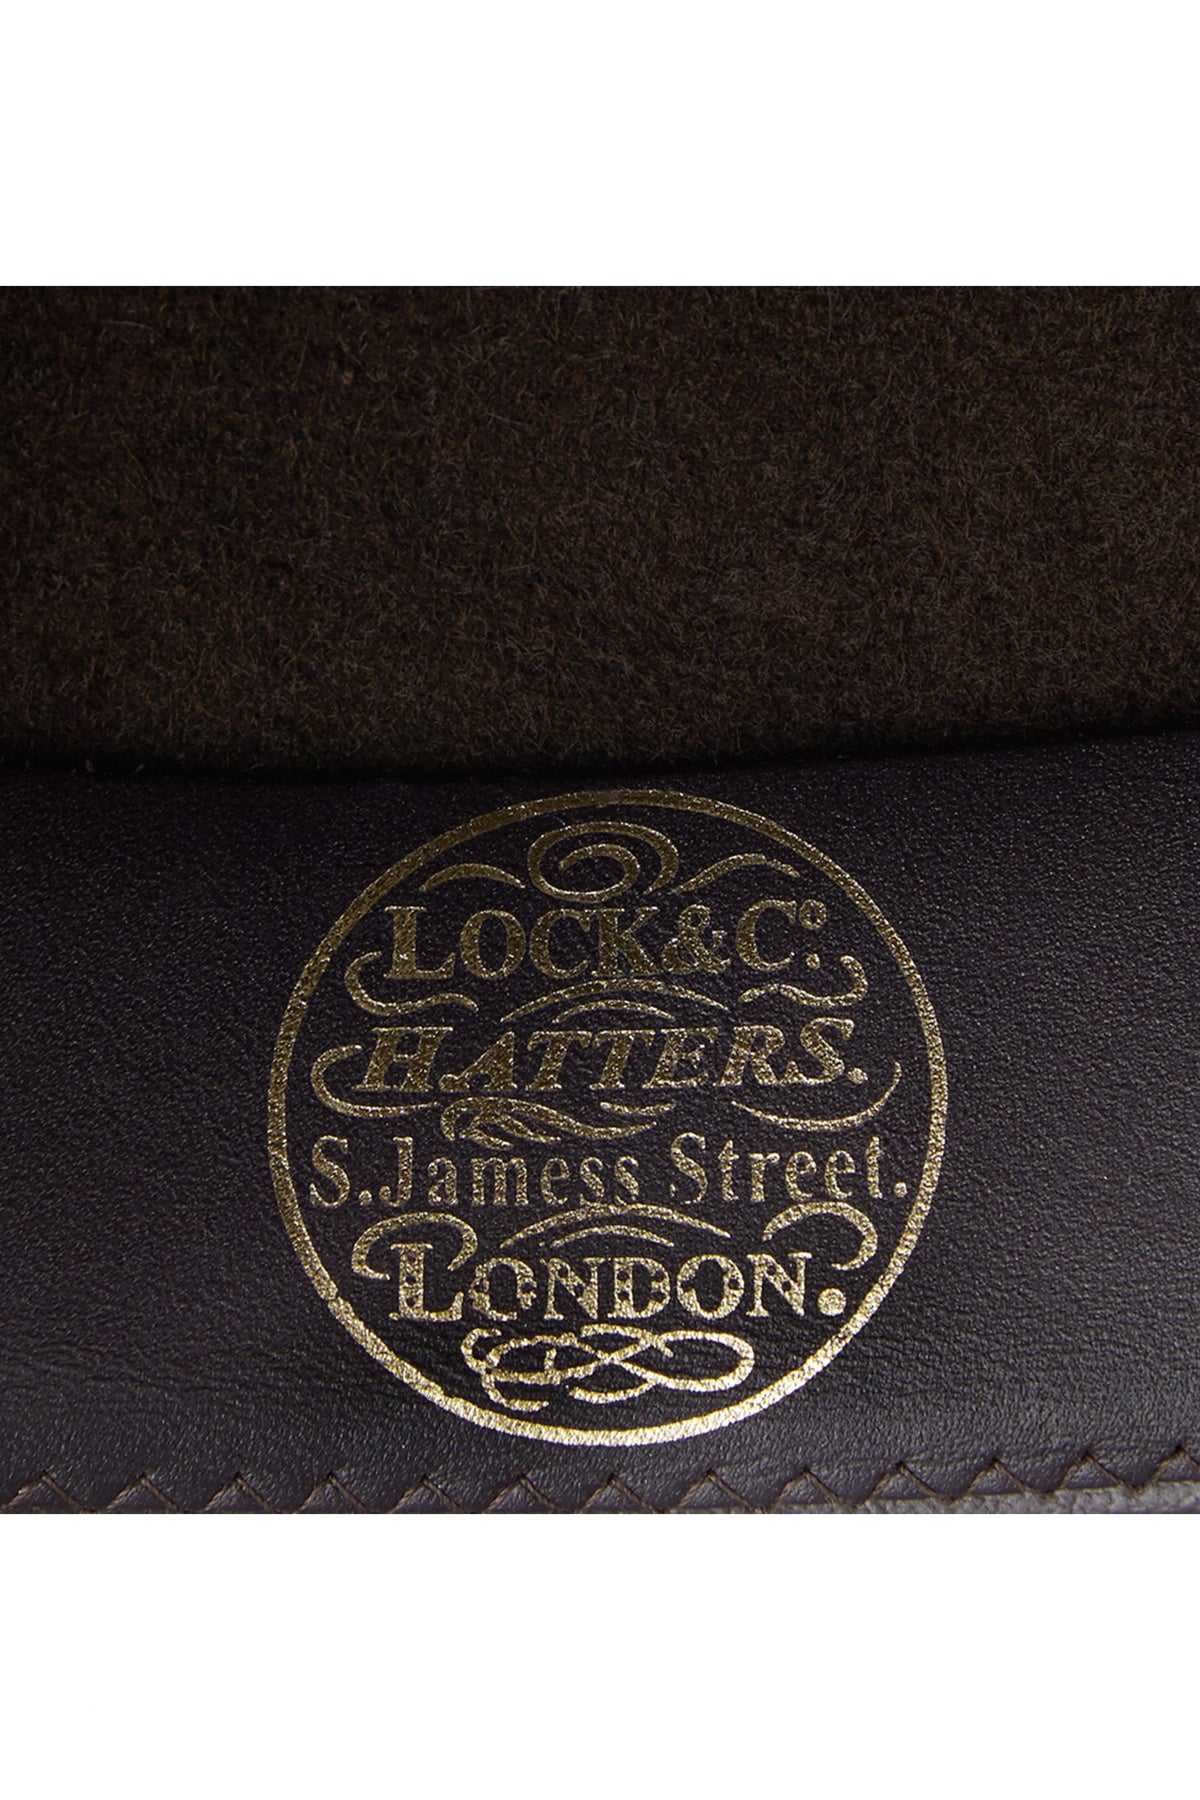 St Louis Trilby - Lock & Co. Hats for Men & Women